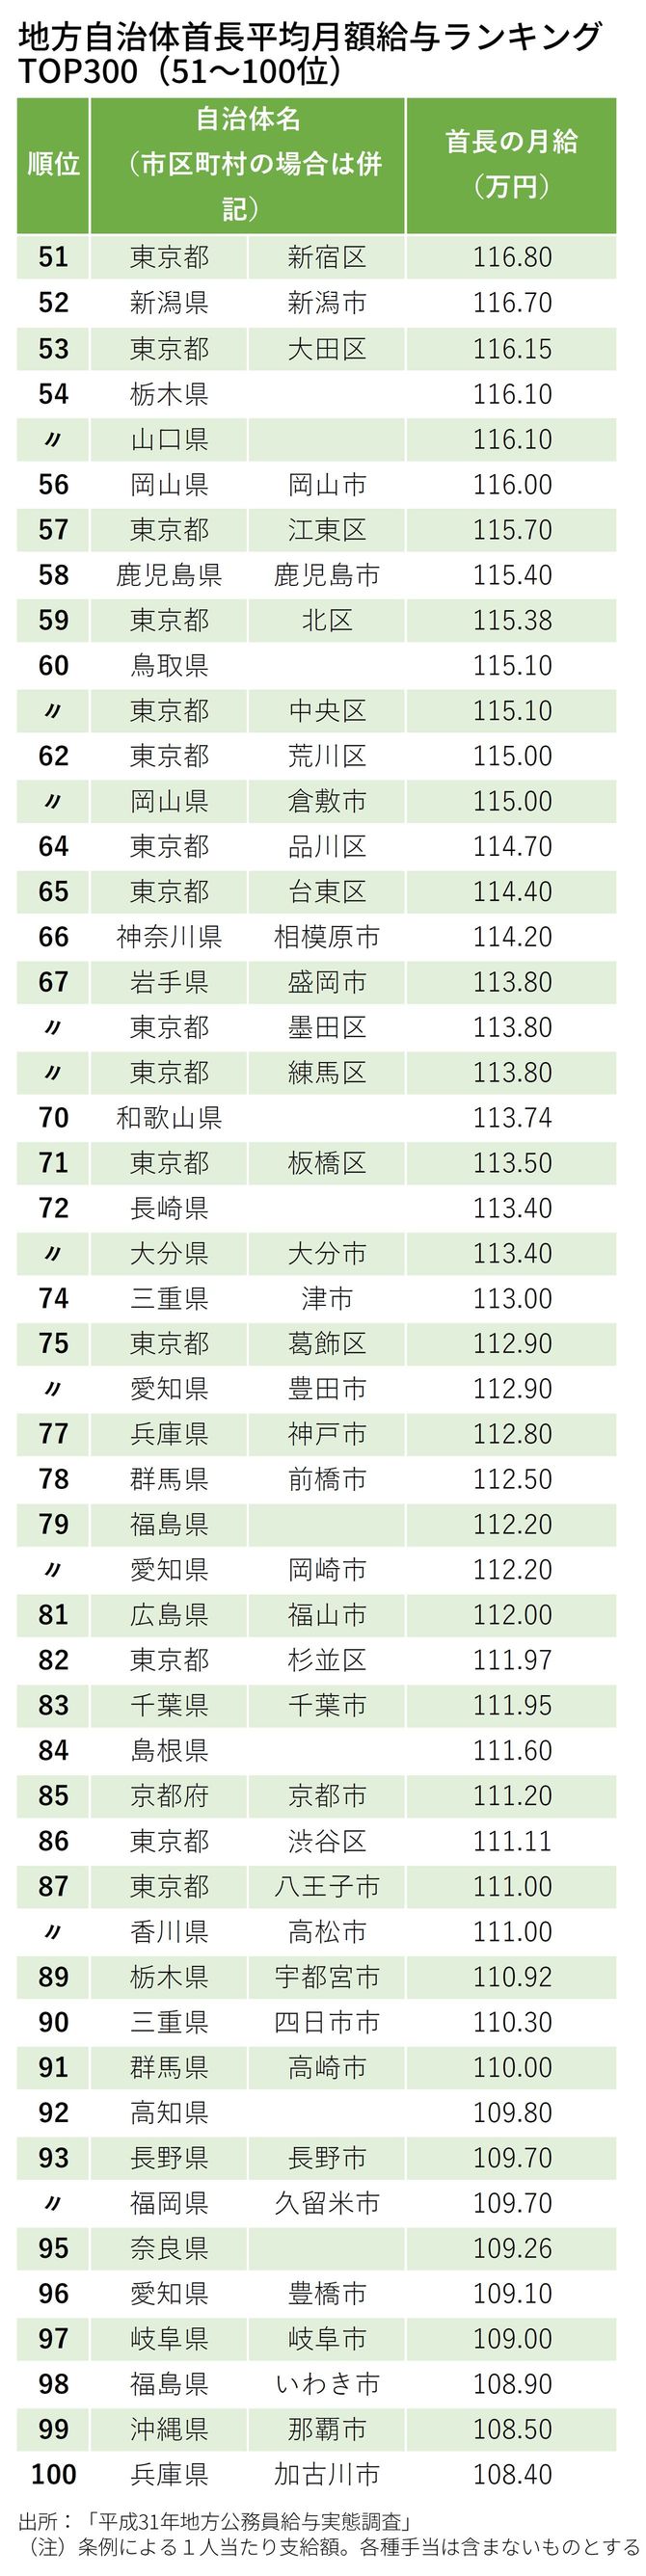 地方自治体首長平均月額給与ランキング TOP300（51～100位）